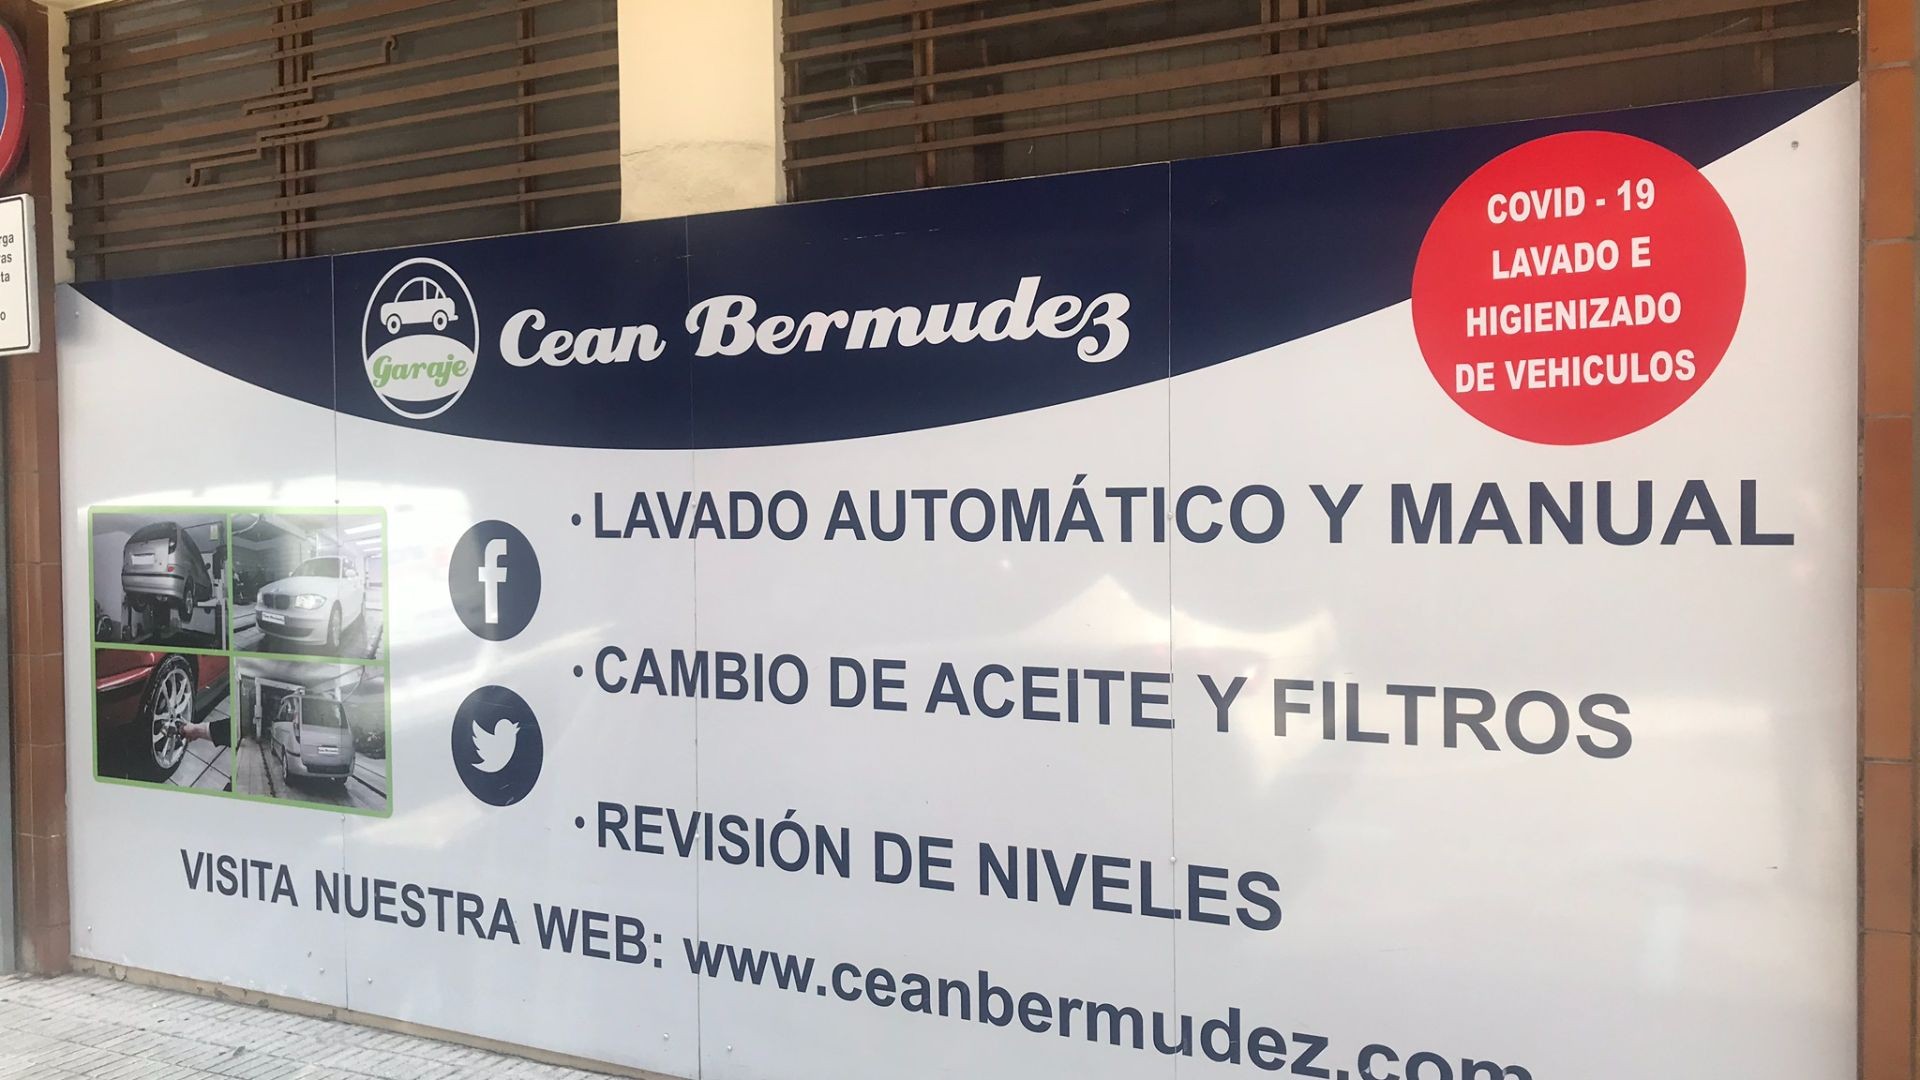 Garaje Cean Bermudez